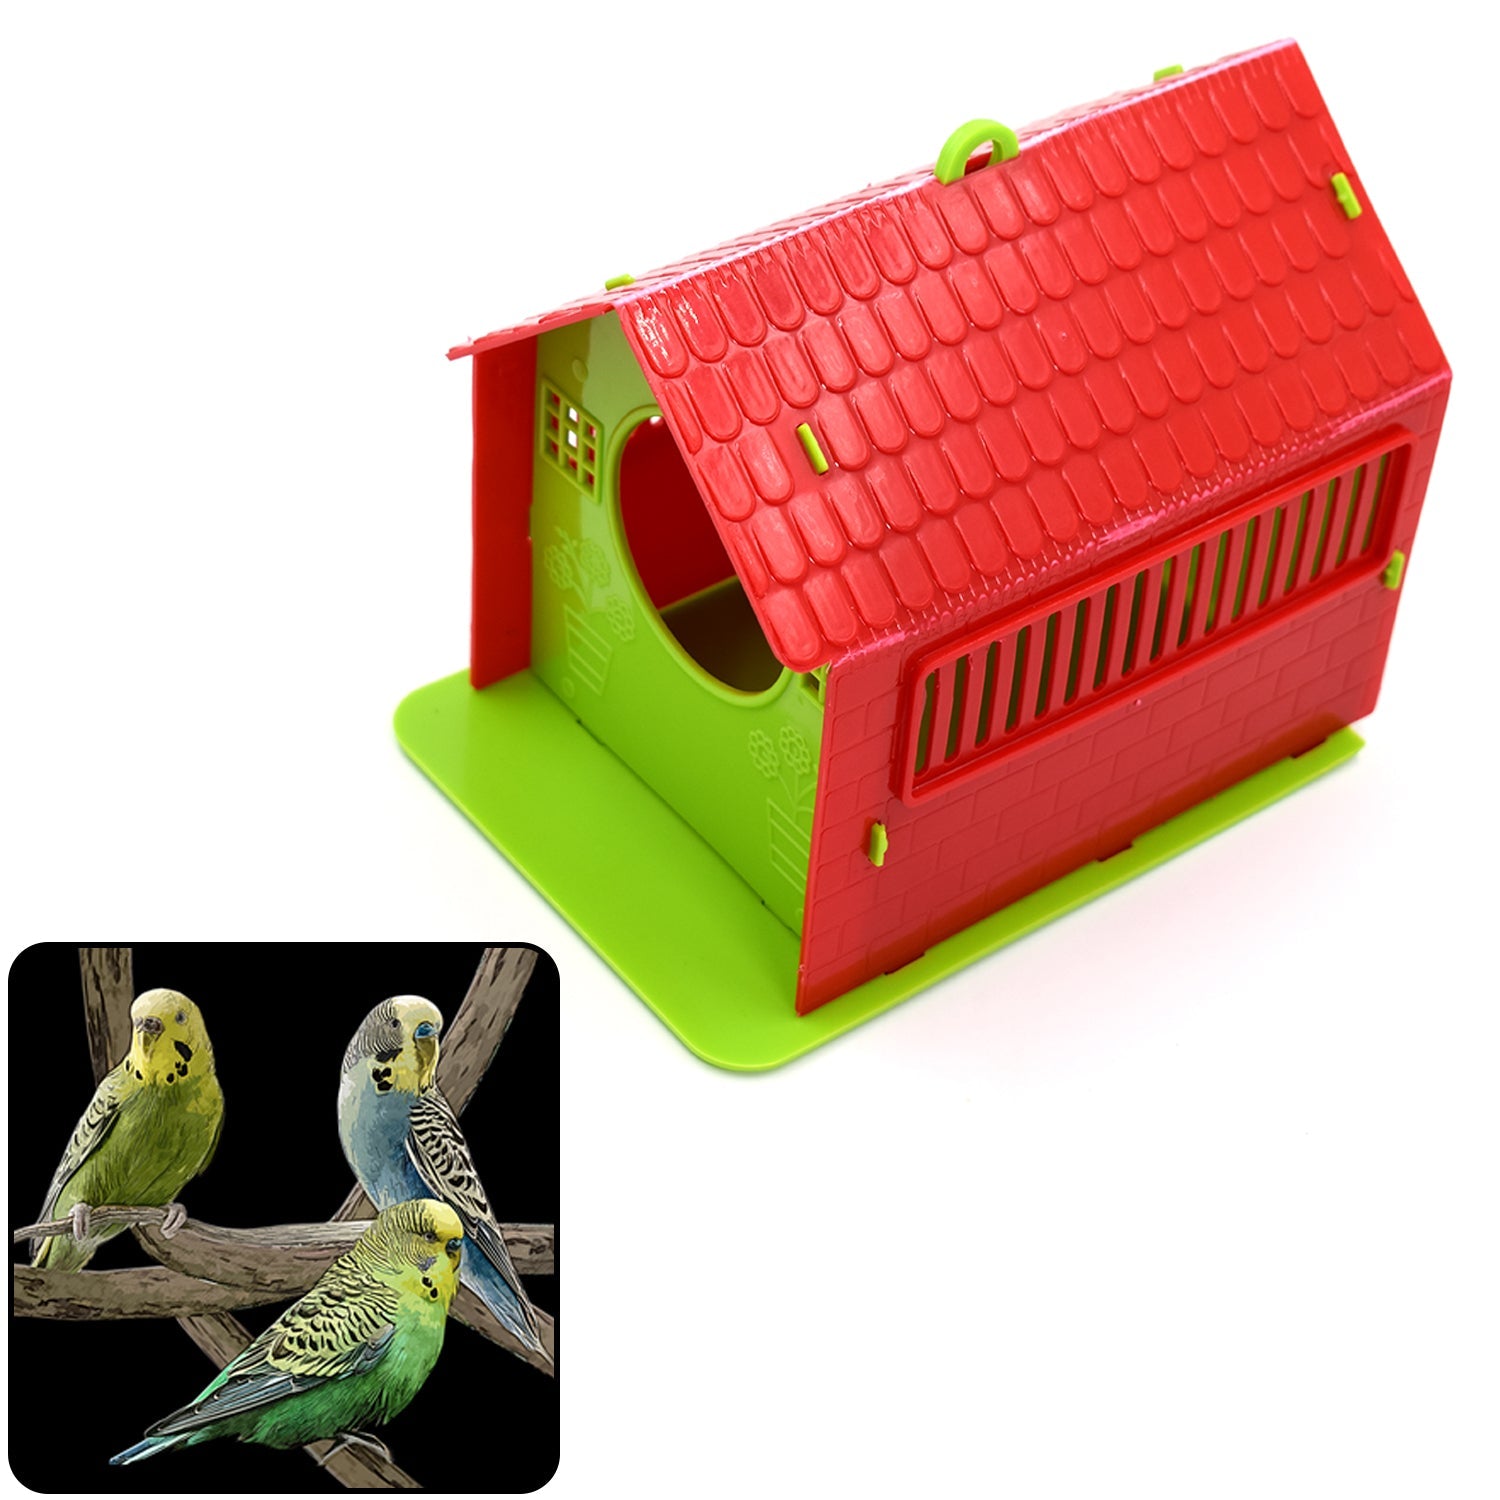 4892 Small Bird House for Birds DeoDap